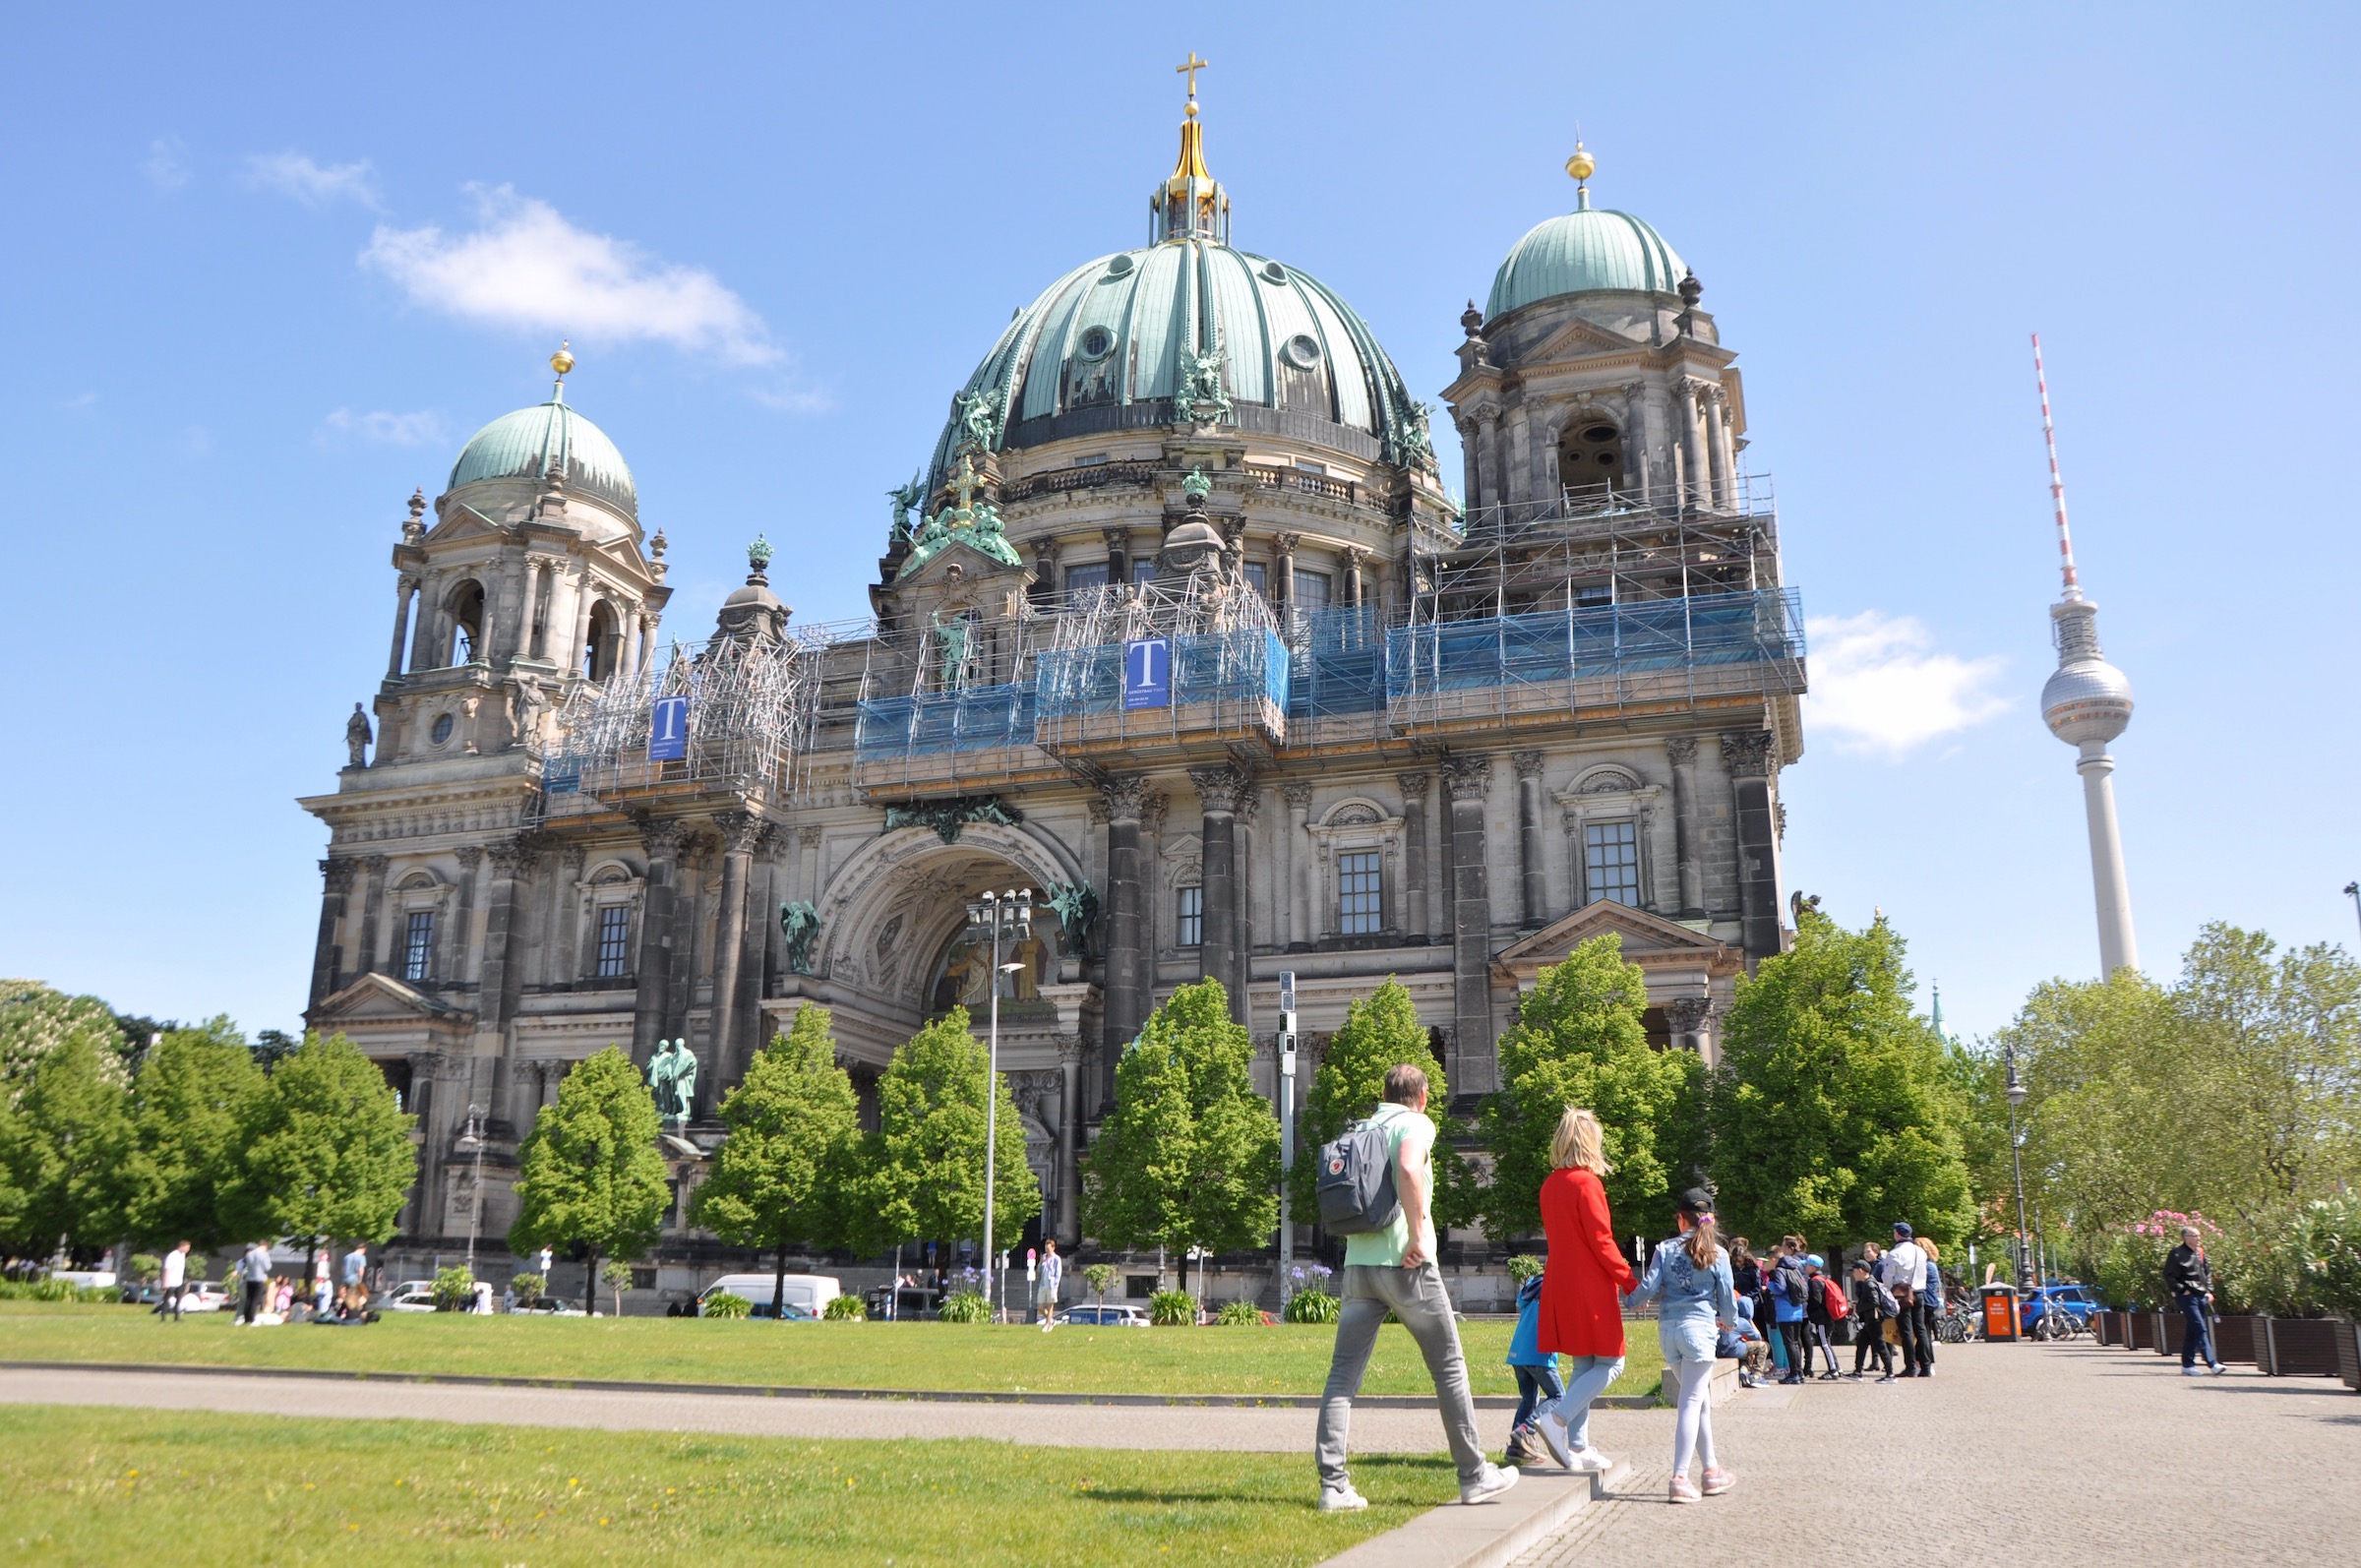 Catedral de Berlim (Berliner Dom)